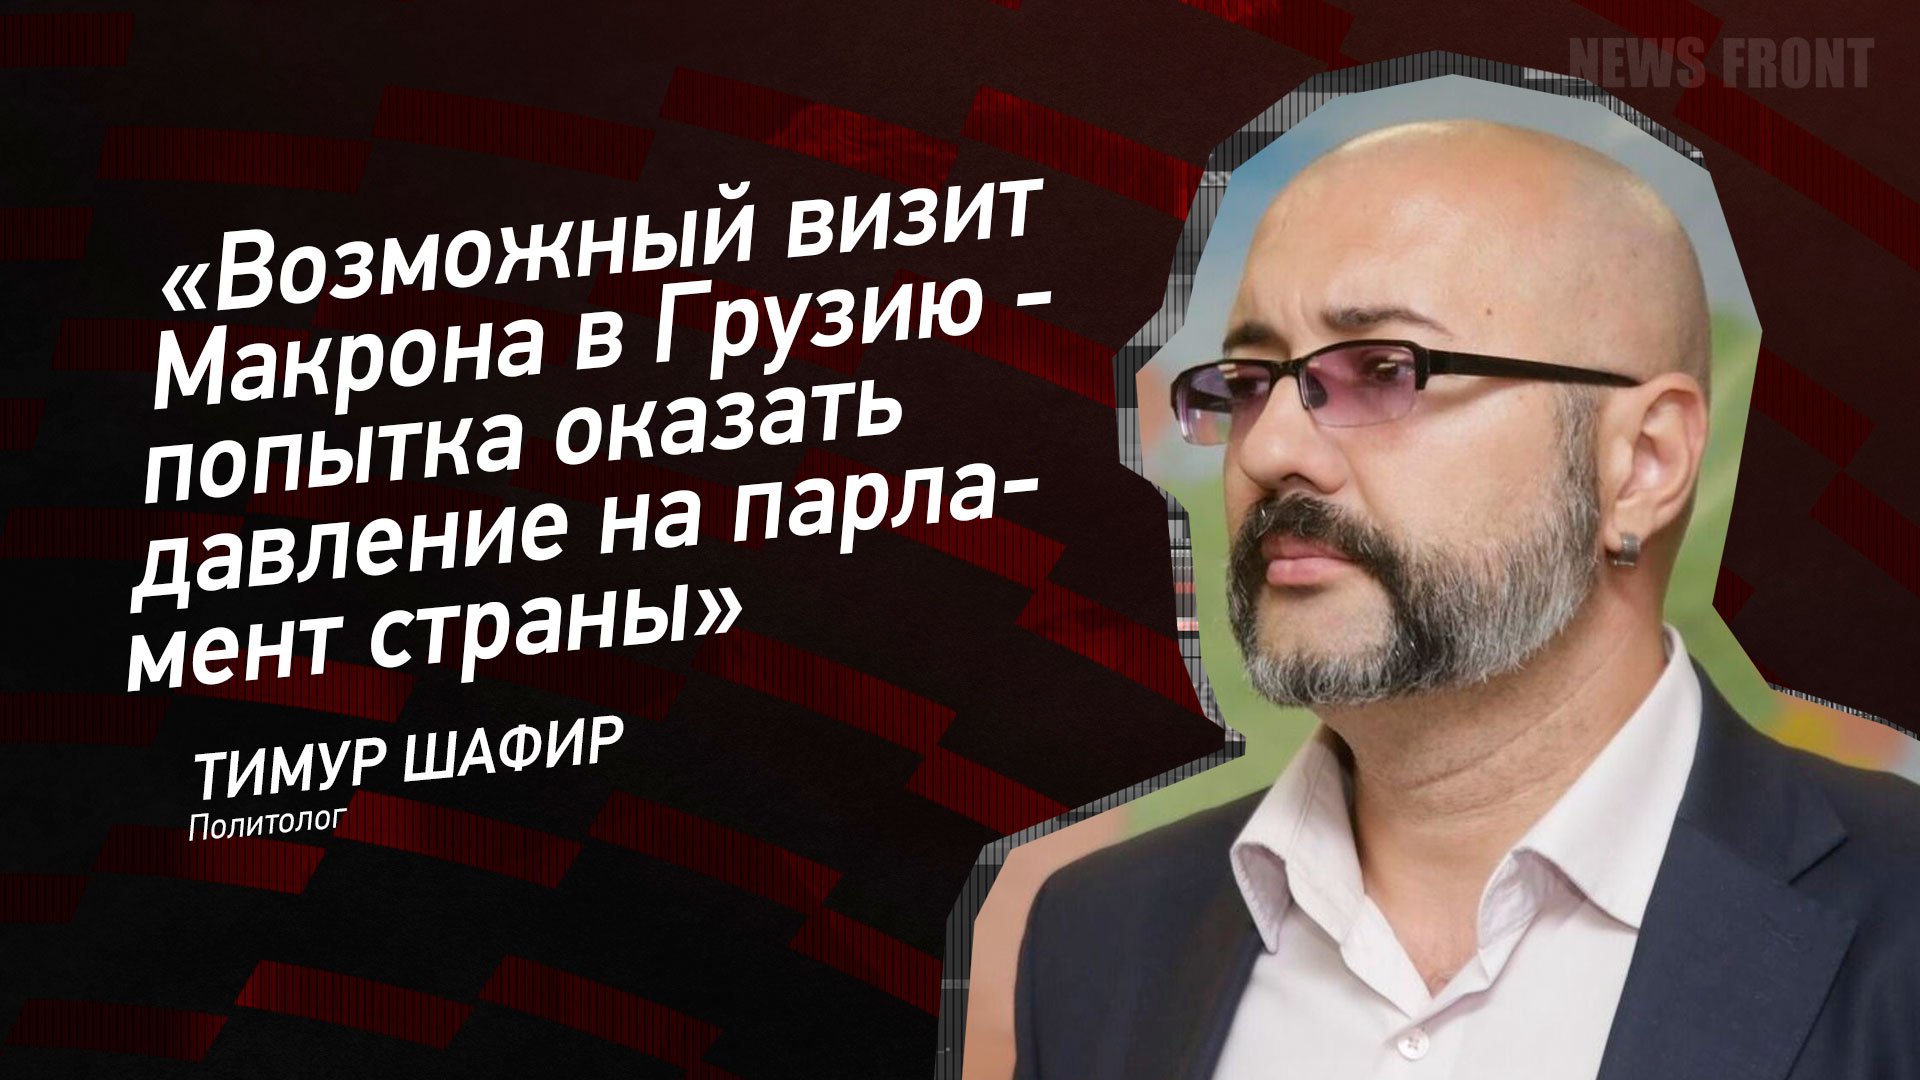 "Возможный визит Макрона в Грузию - попытка оказать давление на парламент страны" - Тимур Шафир